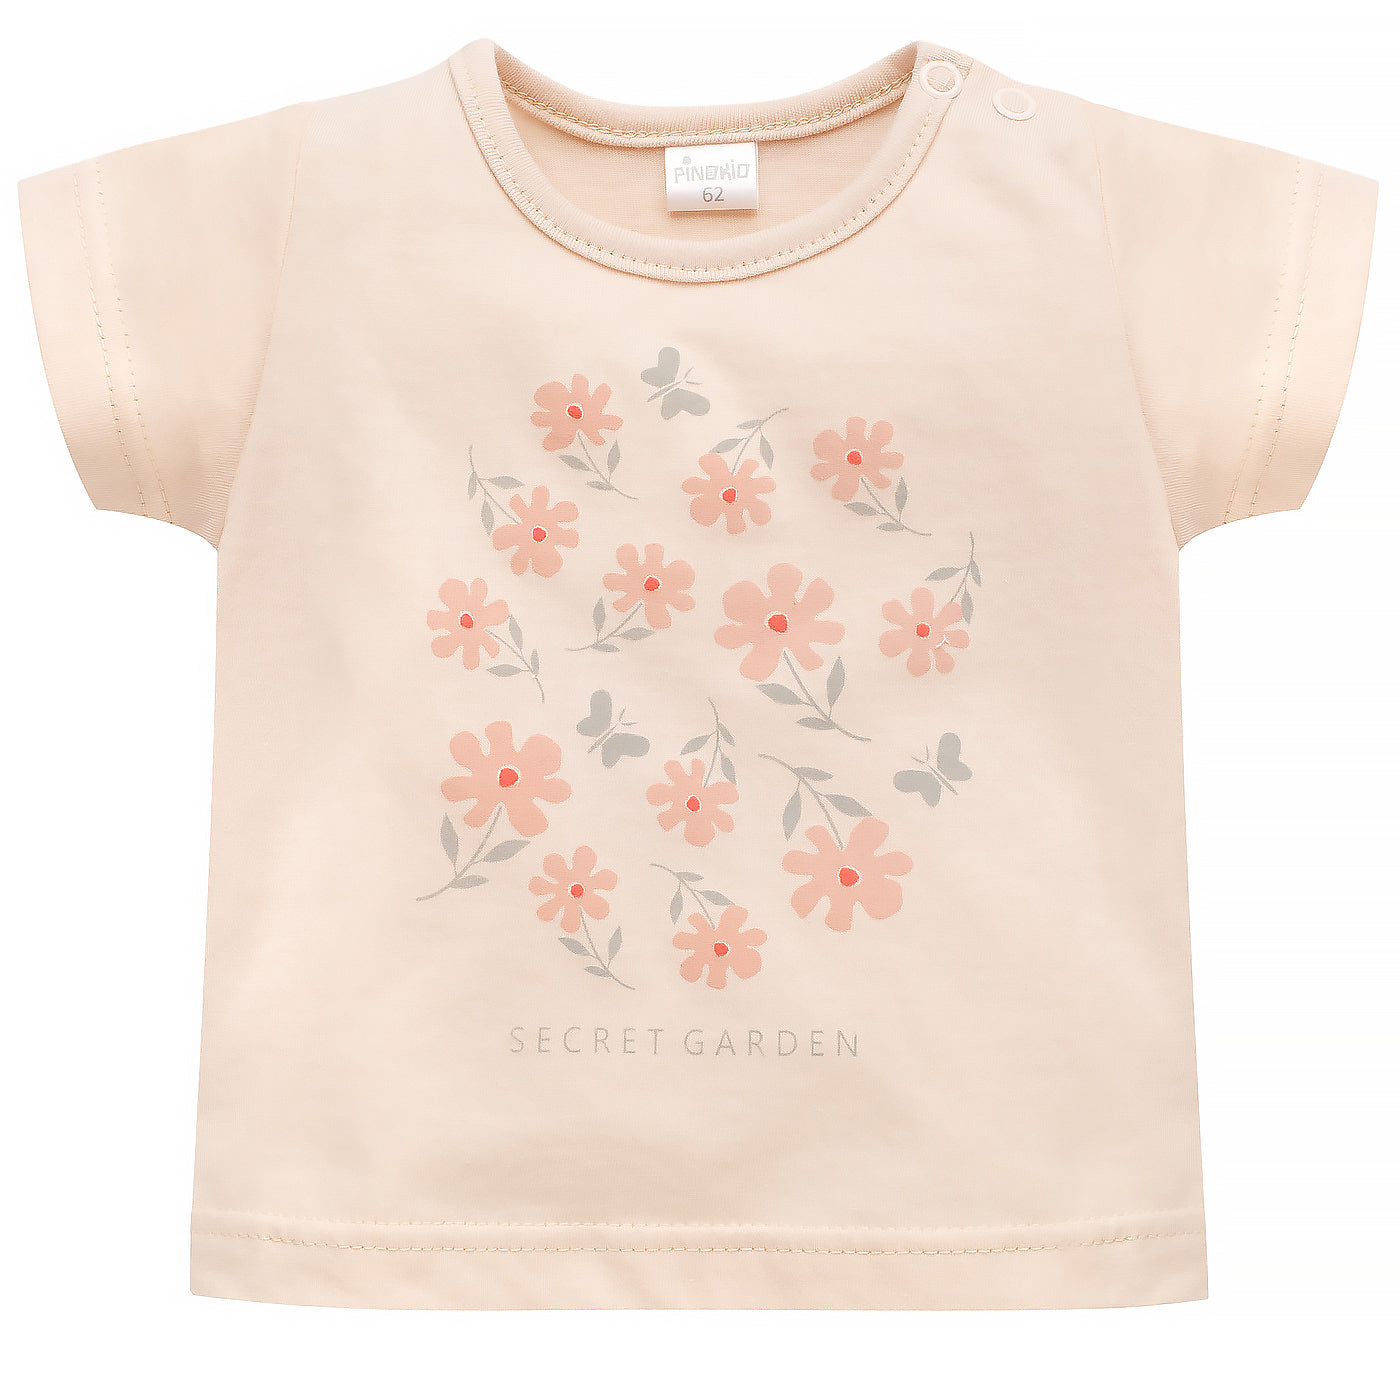 Flowers & Butterflies T-shirt